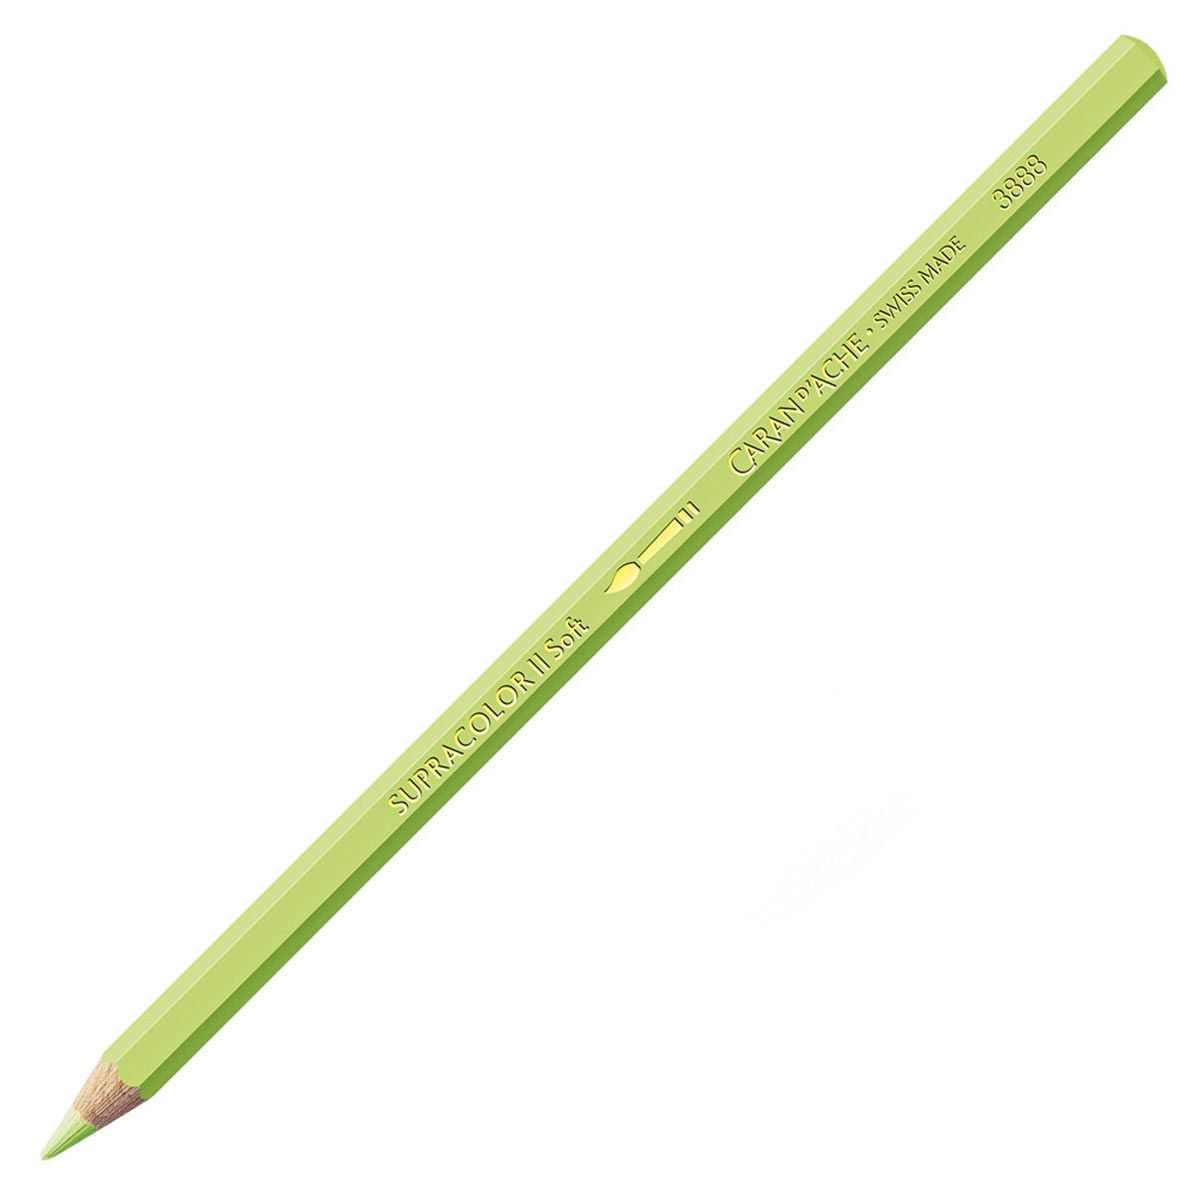 Caran d'Ache Supracolor ll Soft Aquarelle Pencil - Spring Green 470